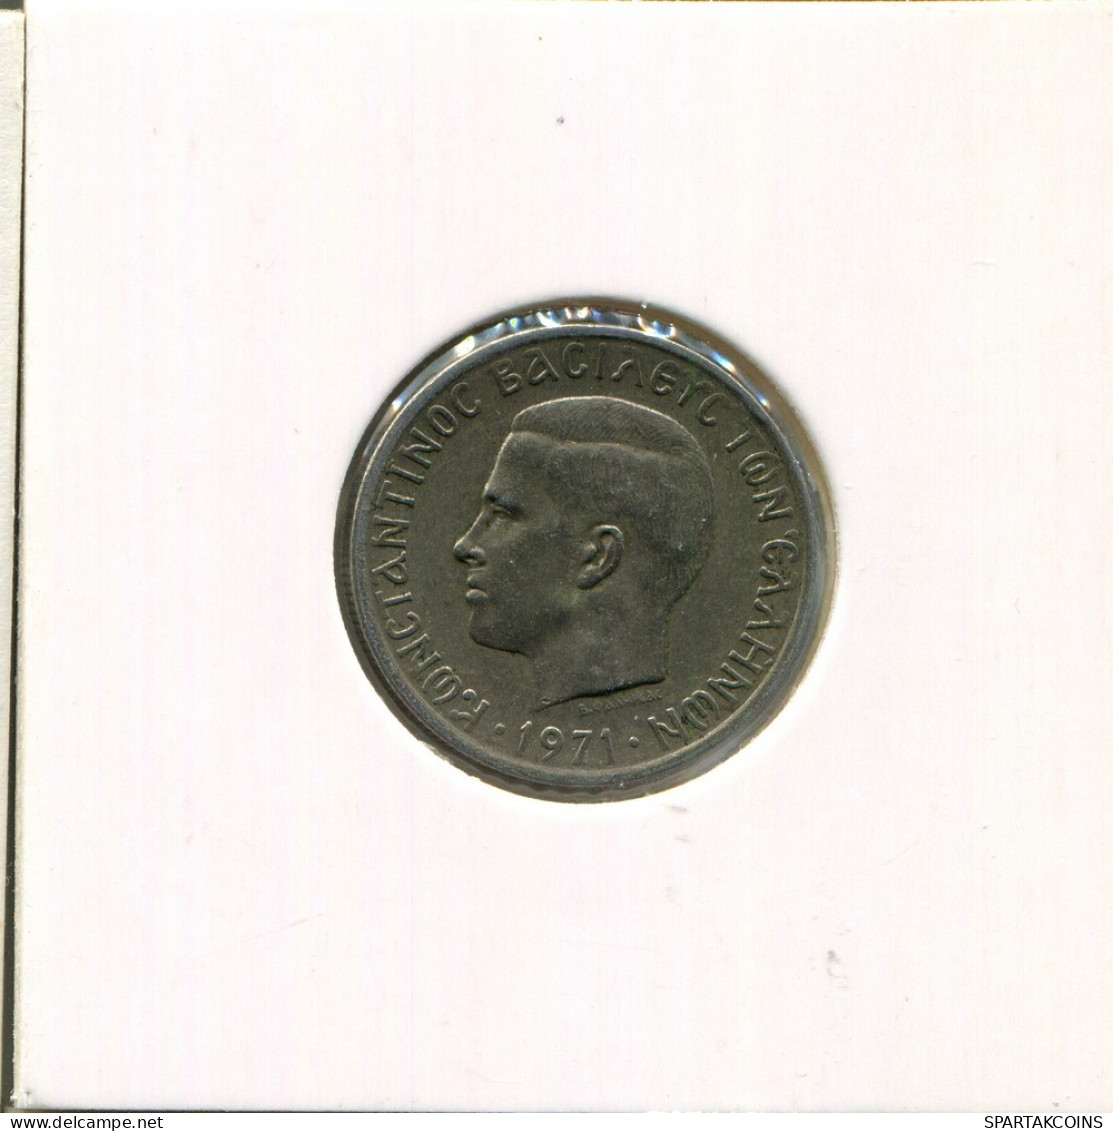 1 DRACHMA 1971 GRECIA GREECE Moneda #AR345.E.A - Greece